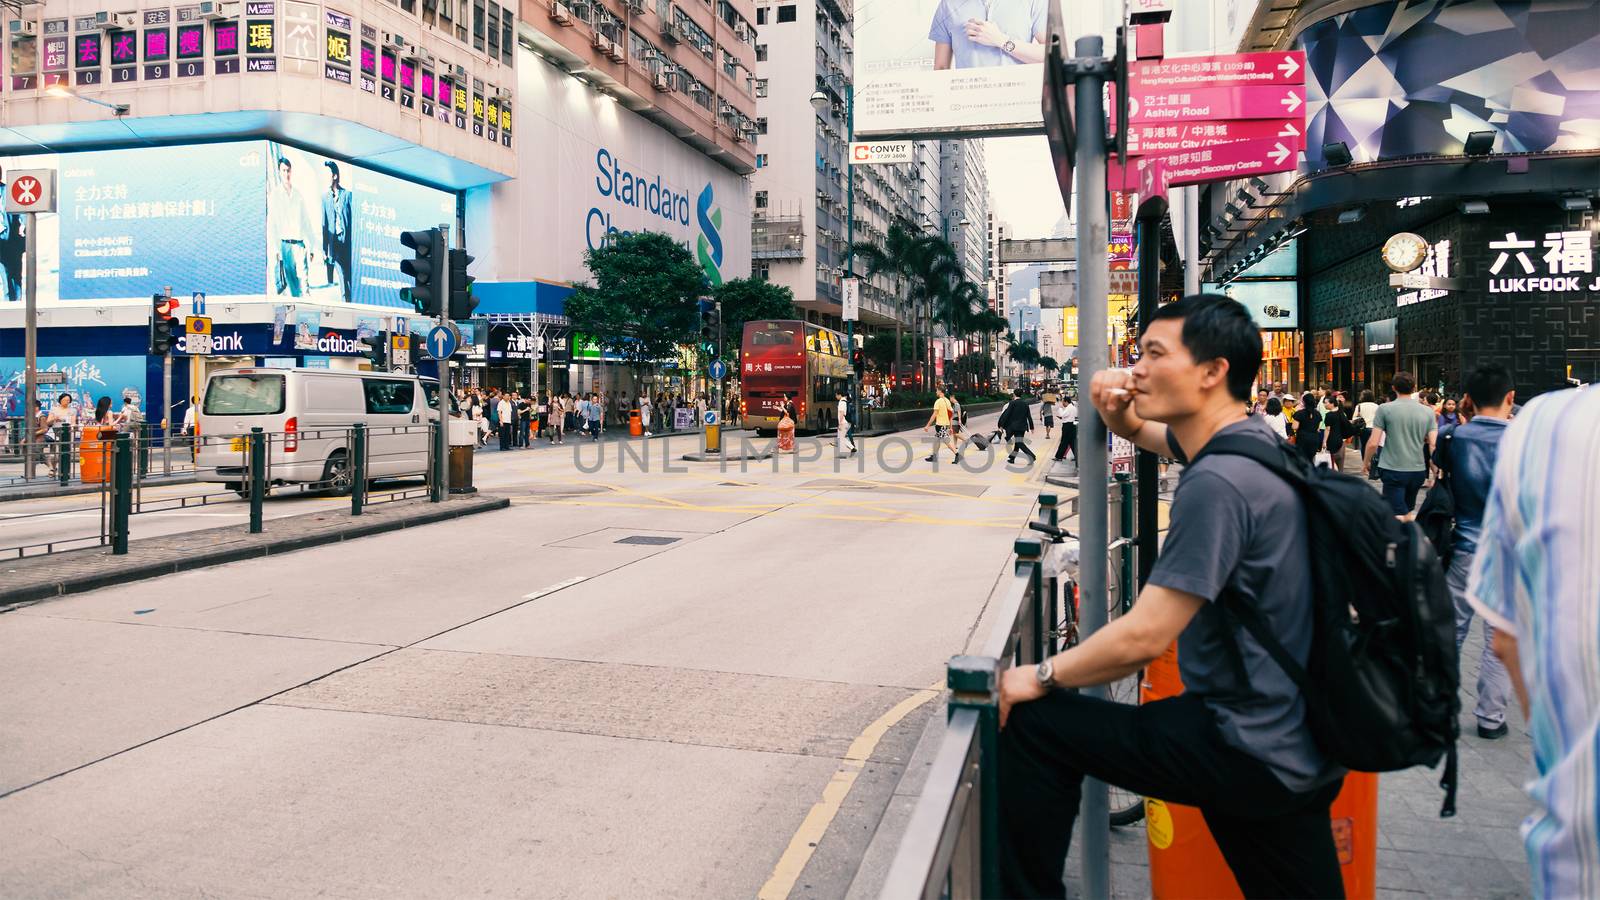 A man smoking and waiting for the bus, Tsim Sha Tsui, Hong Kong, China, 21 June, 2013.